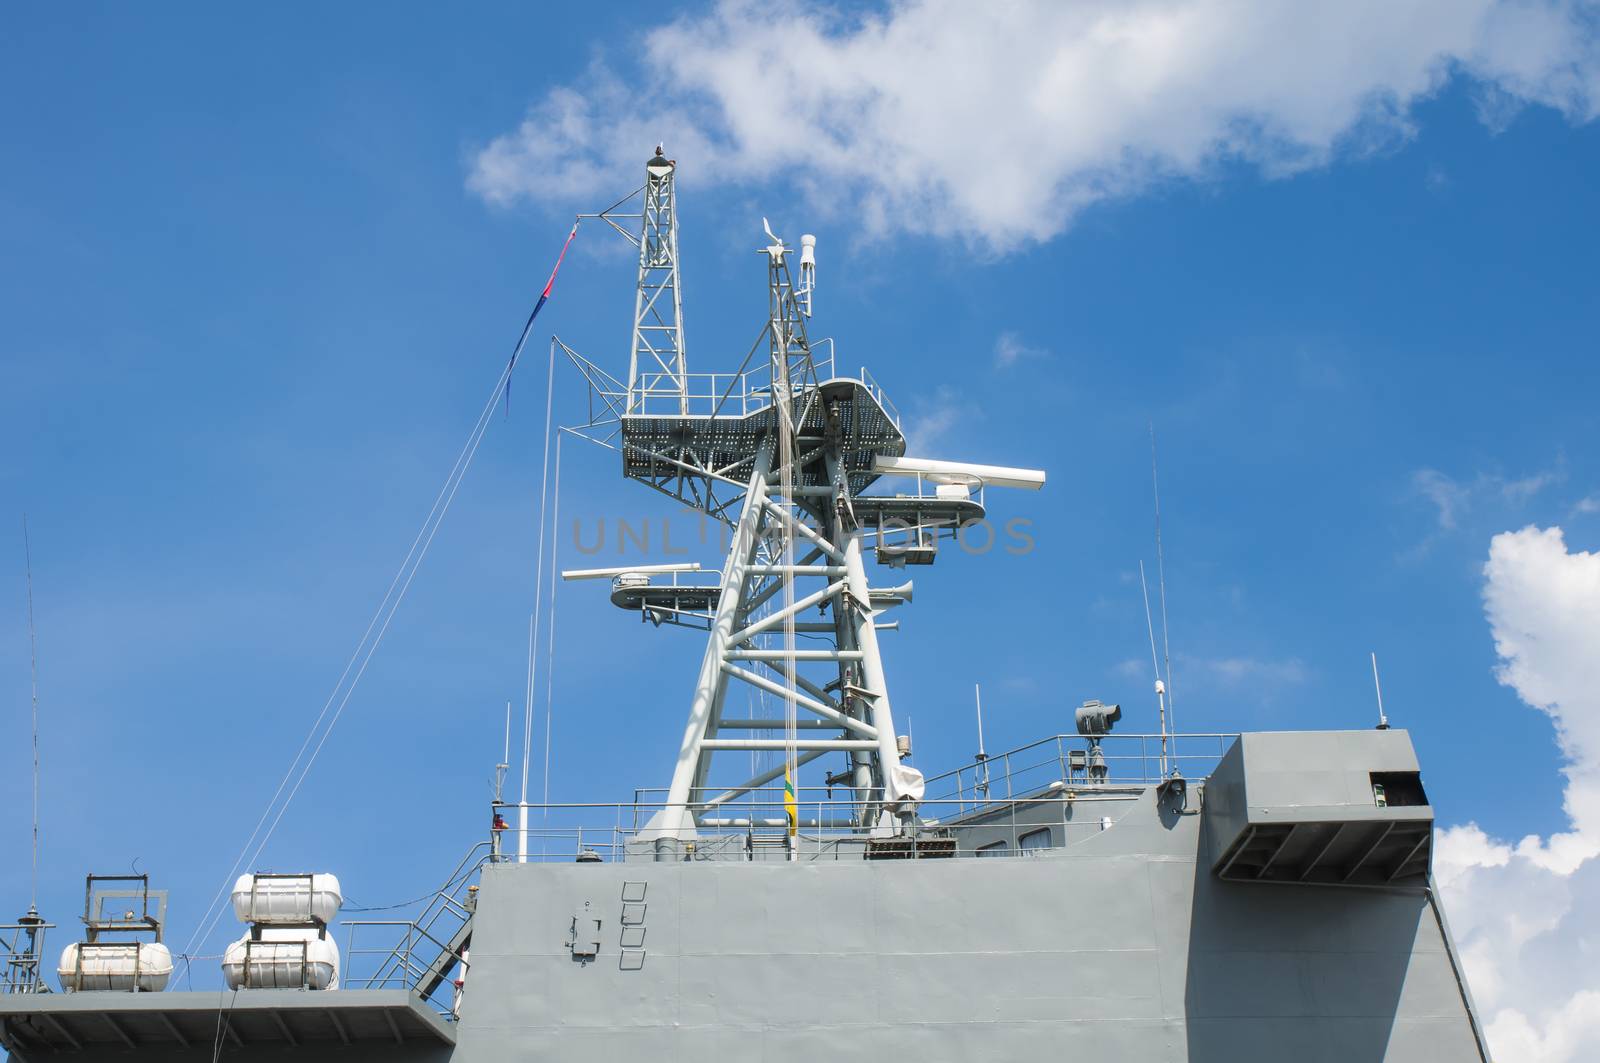 Detail of antenna on warship by Sorapop